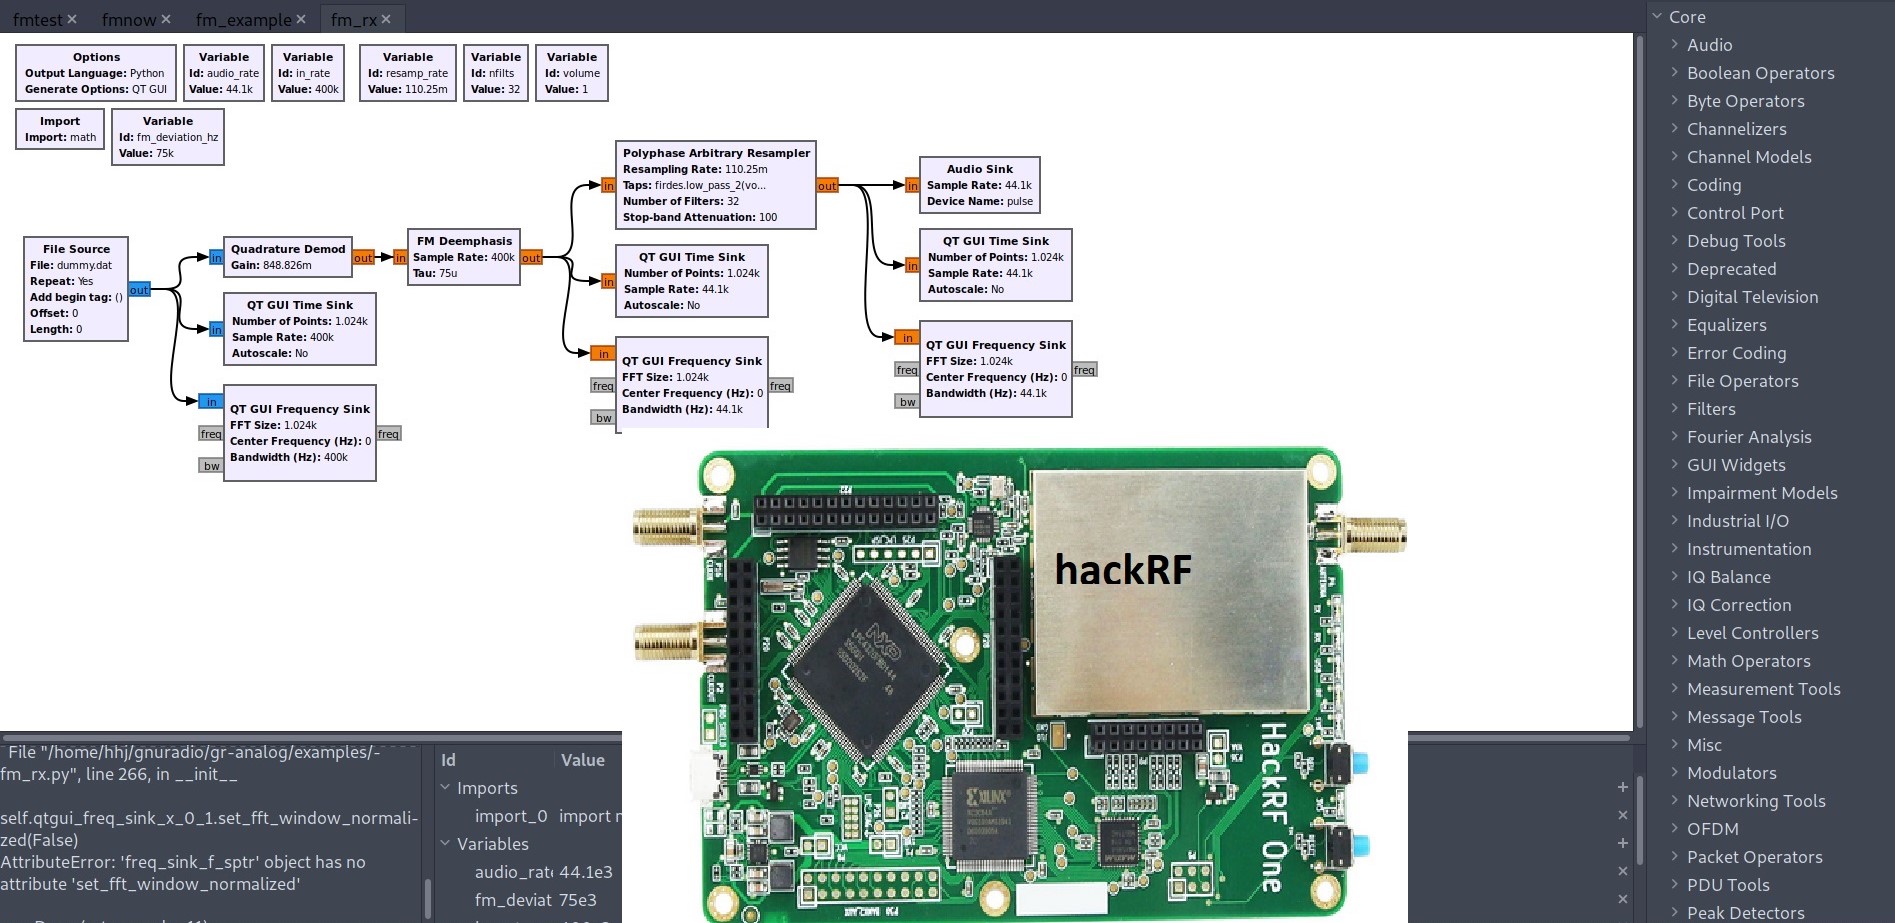 IoT pentest via hackRF and Gnuradio